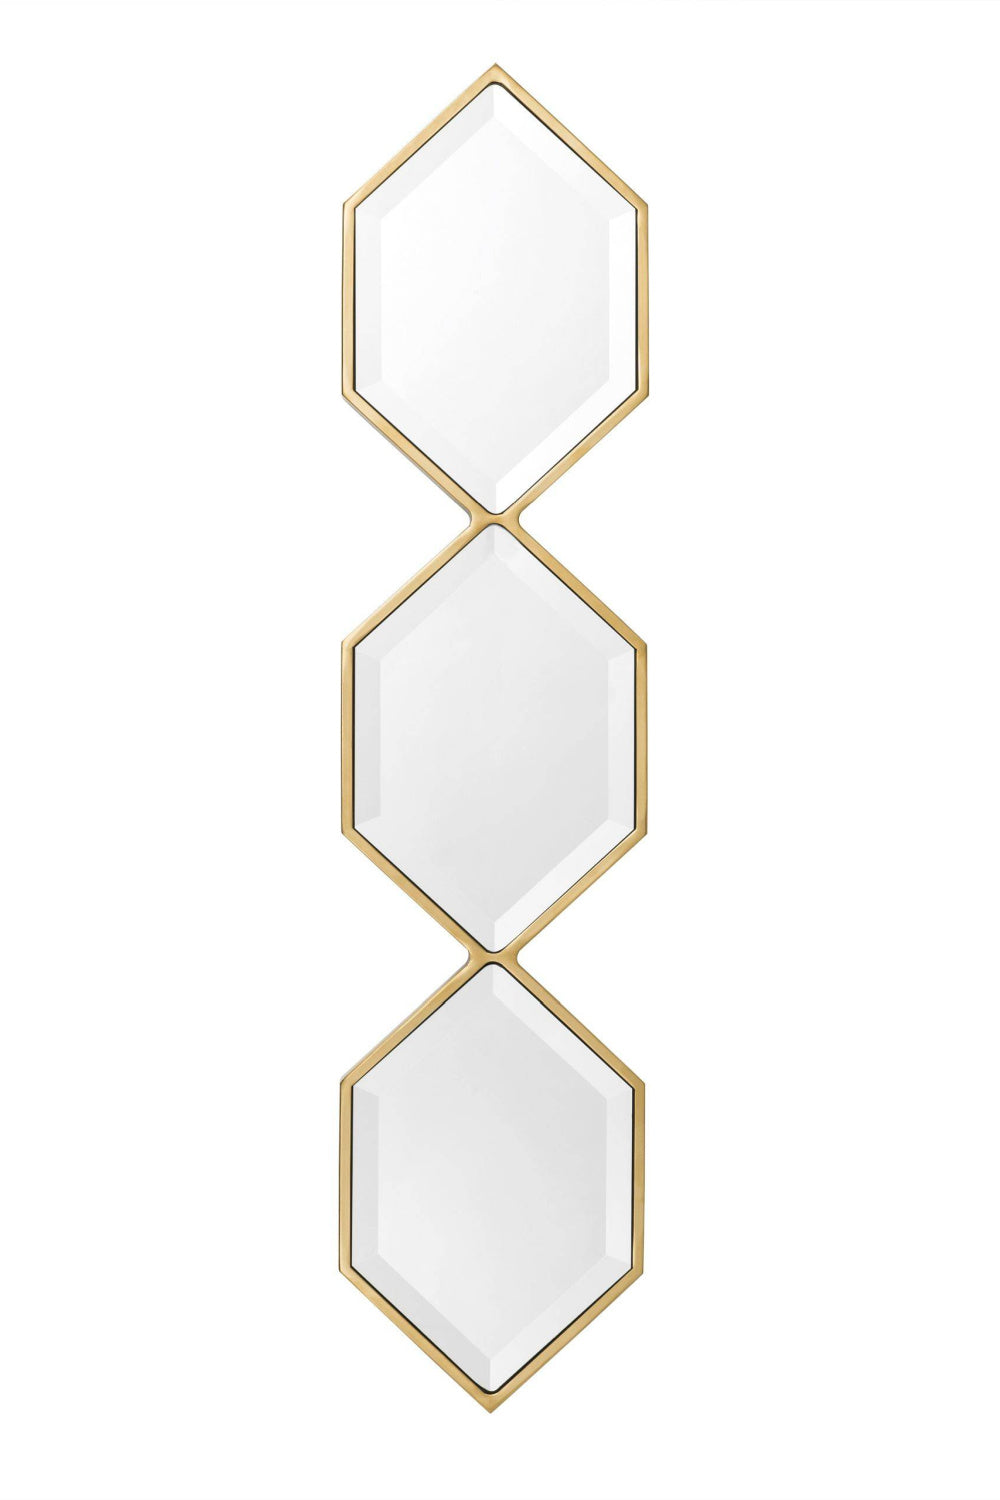 Gold Hexagonal Beveled Trio Mirror Glass | Eichholtz Saronno | OROA